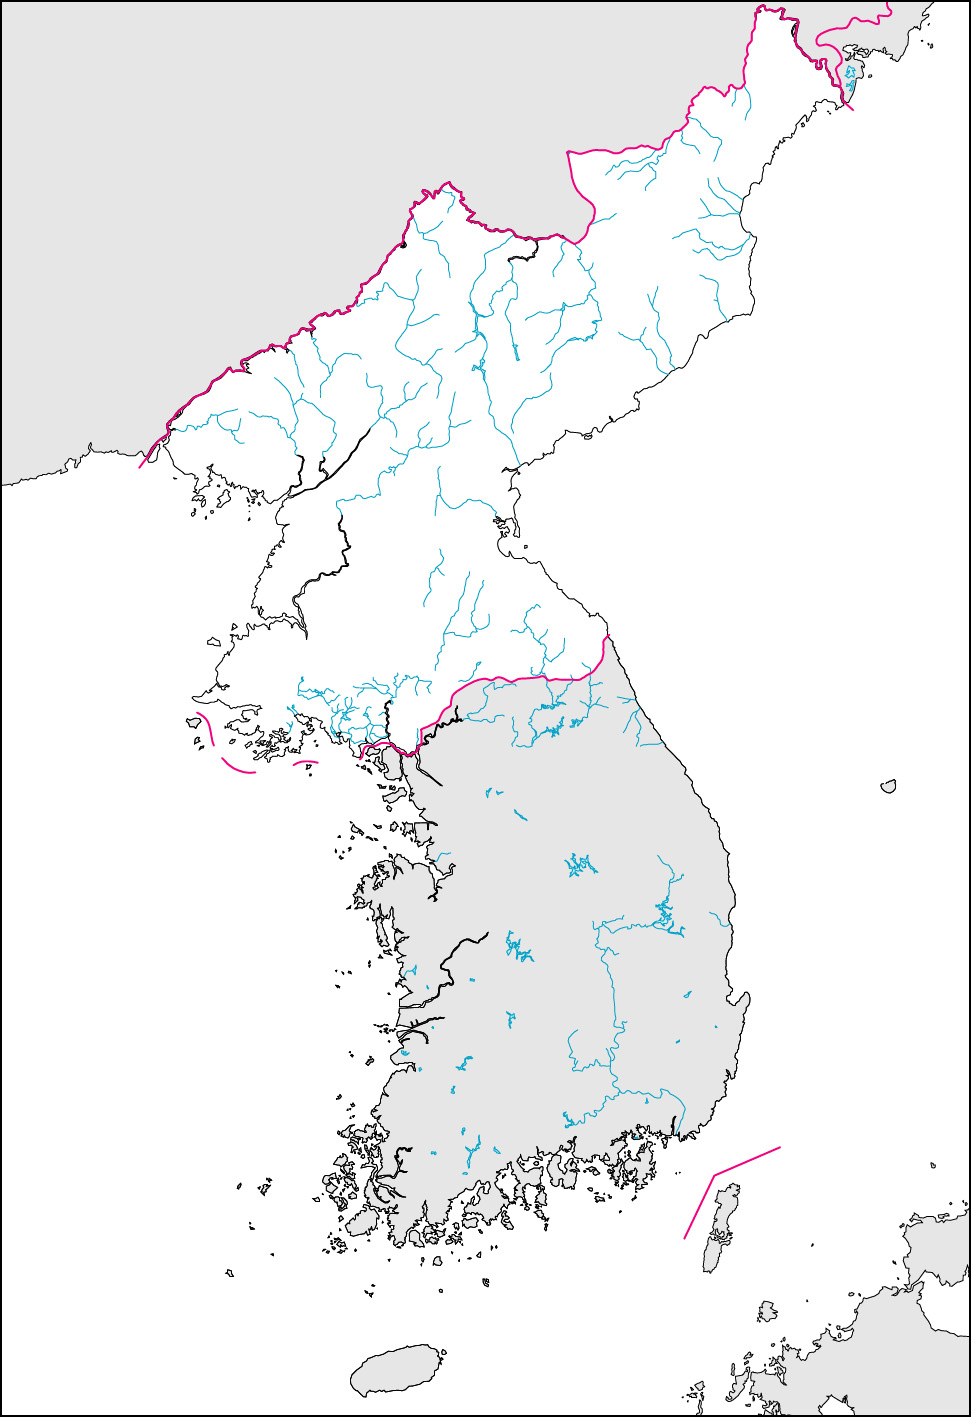 北朝鮮白地図(国境記載)の画像